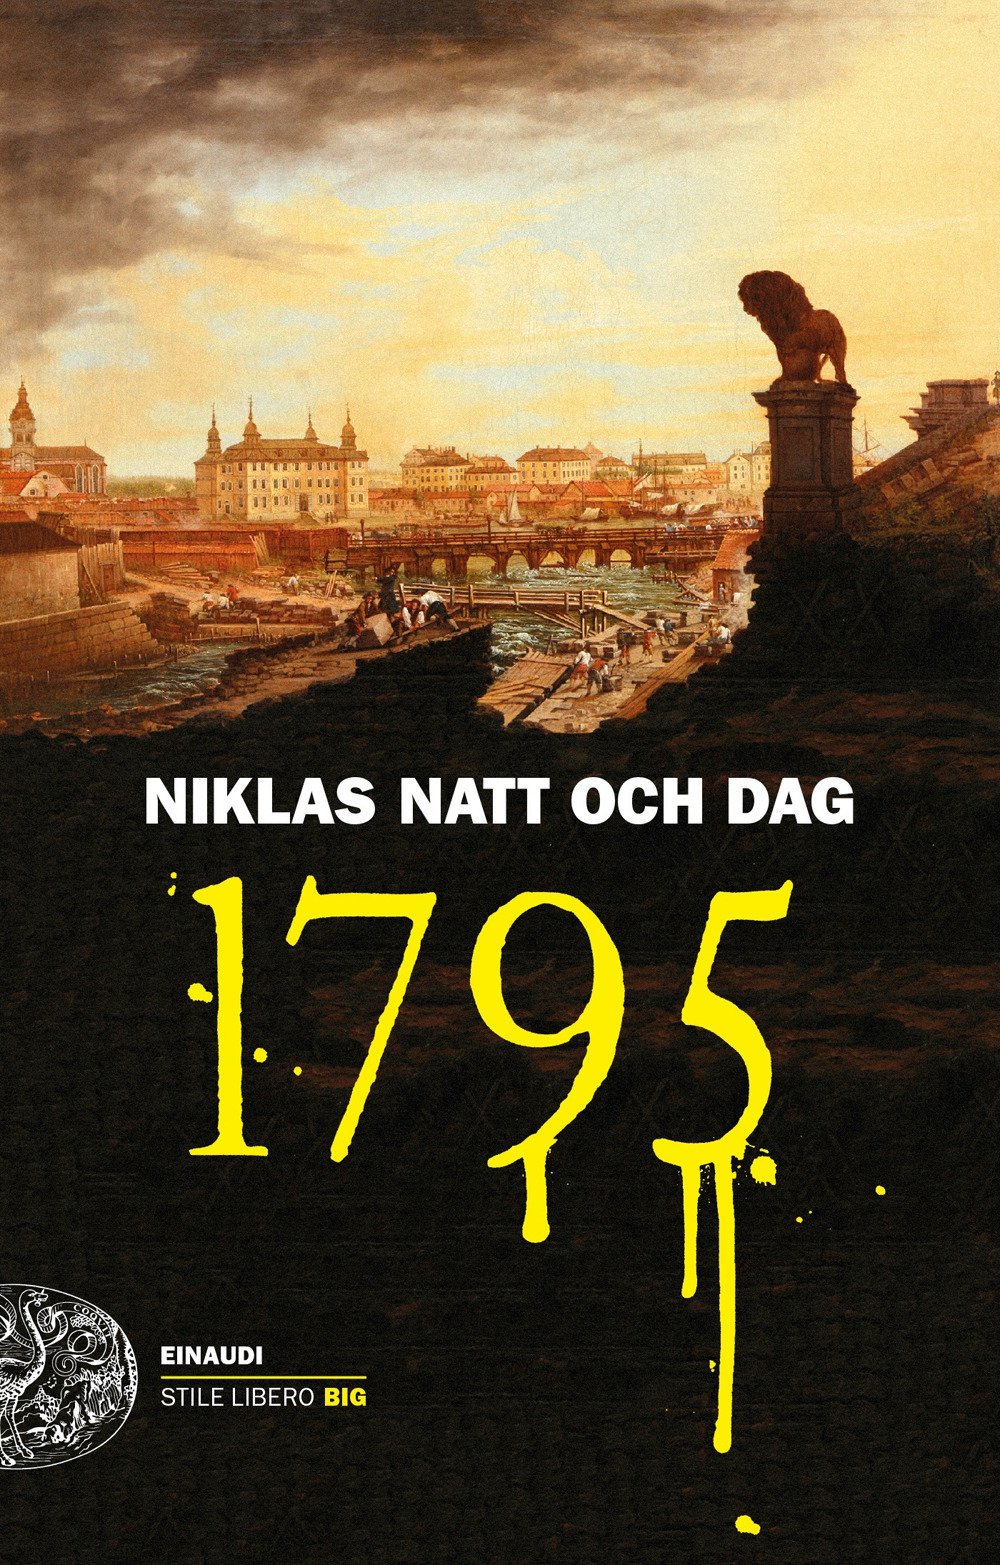 Libri Natt och Dag Niklas - 1795 NUOVO SIGILLATO, EDIZIONE DEL 12/07/2022 SUBITO DISPONIBILE